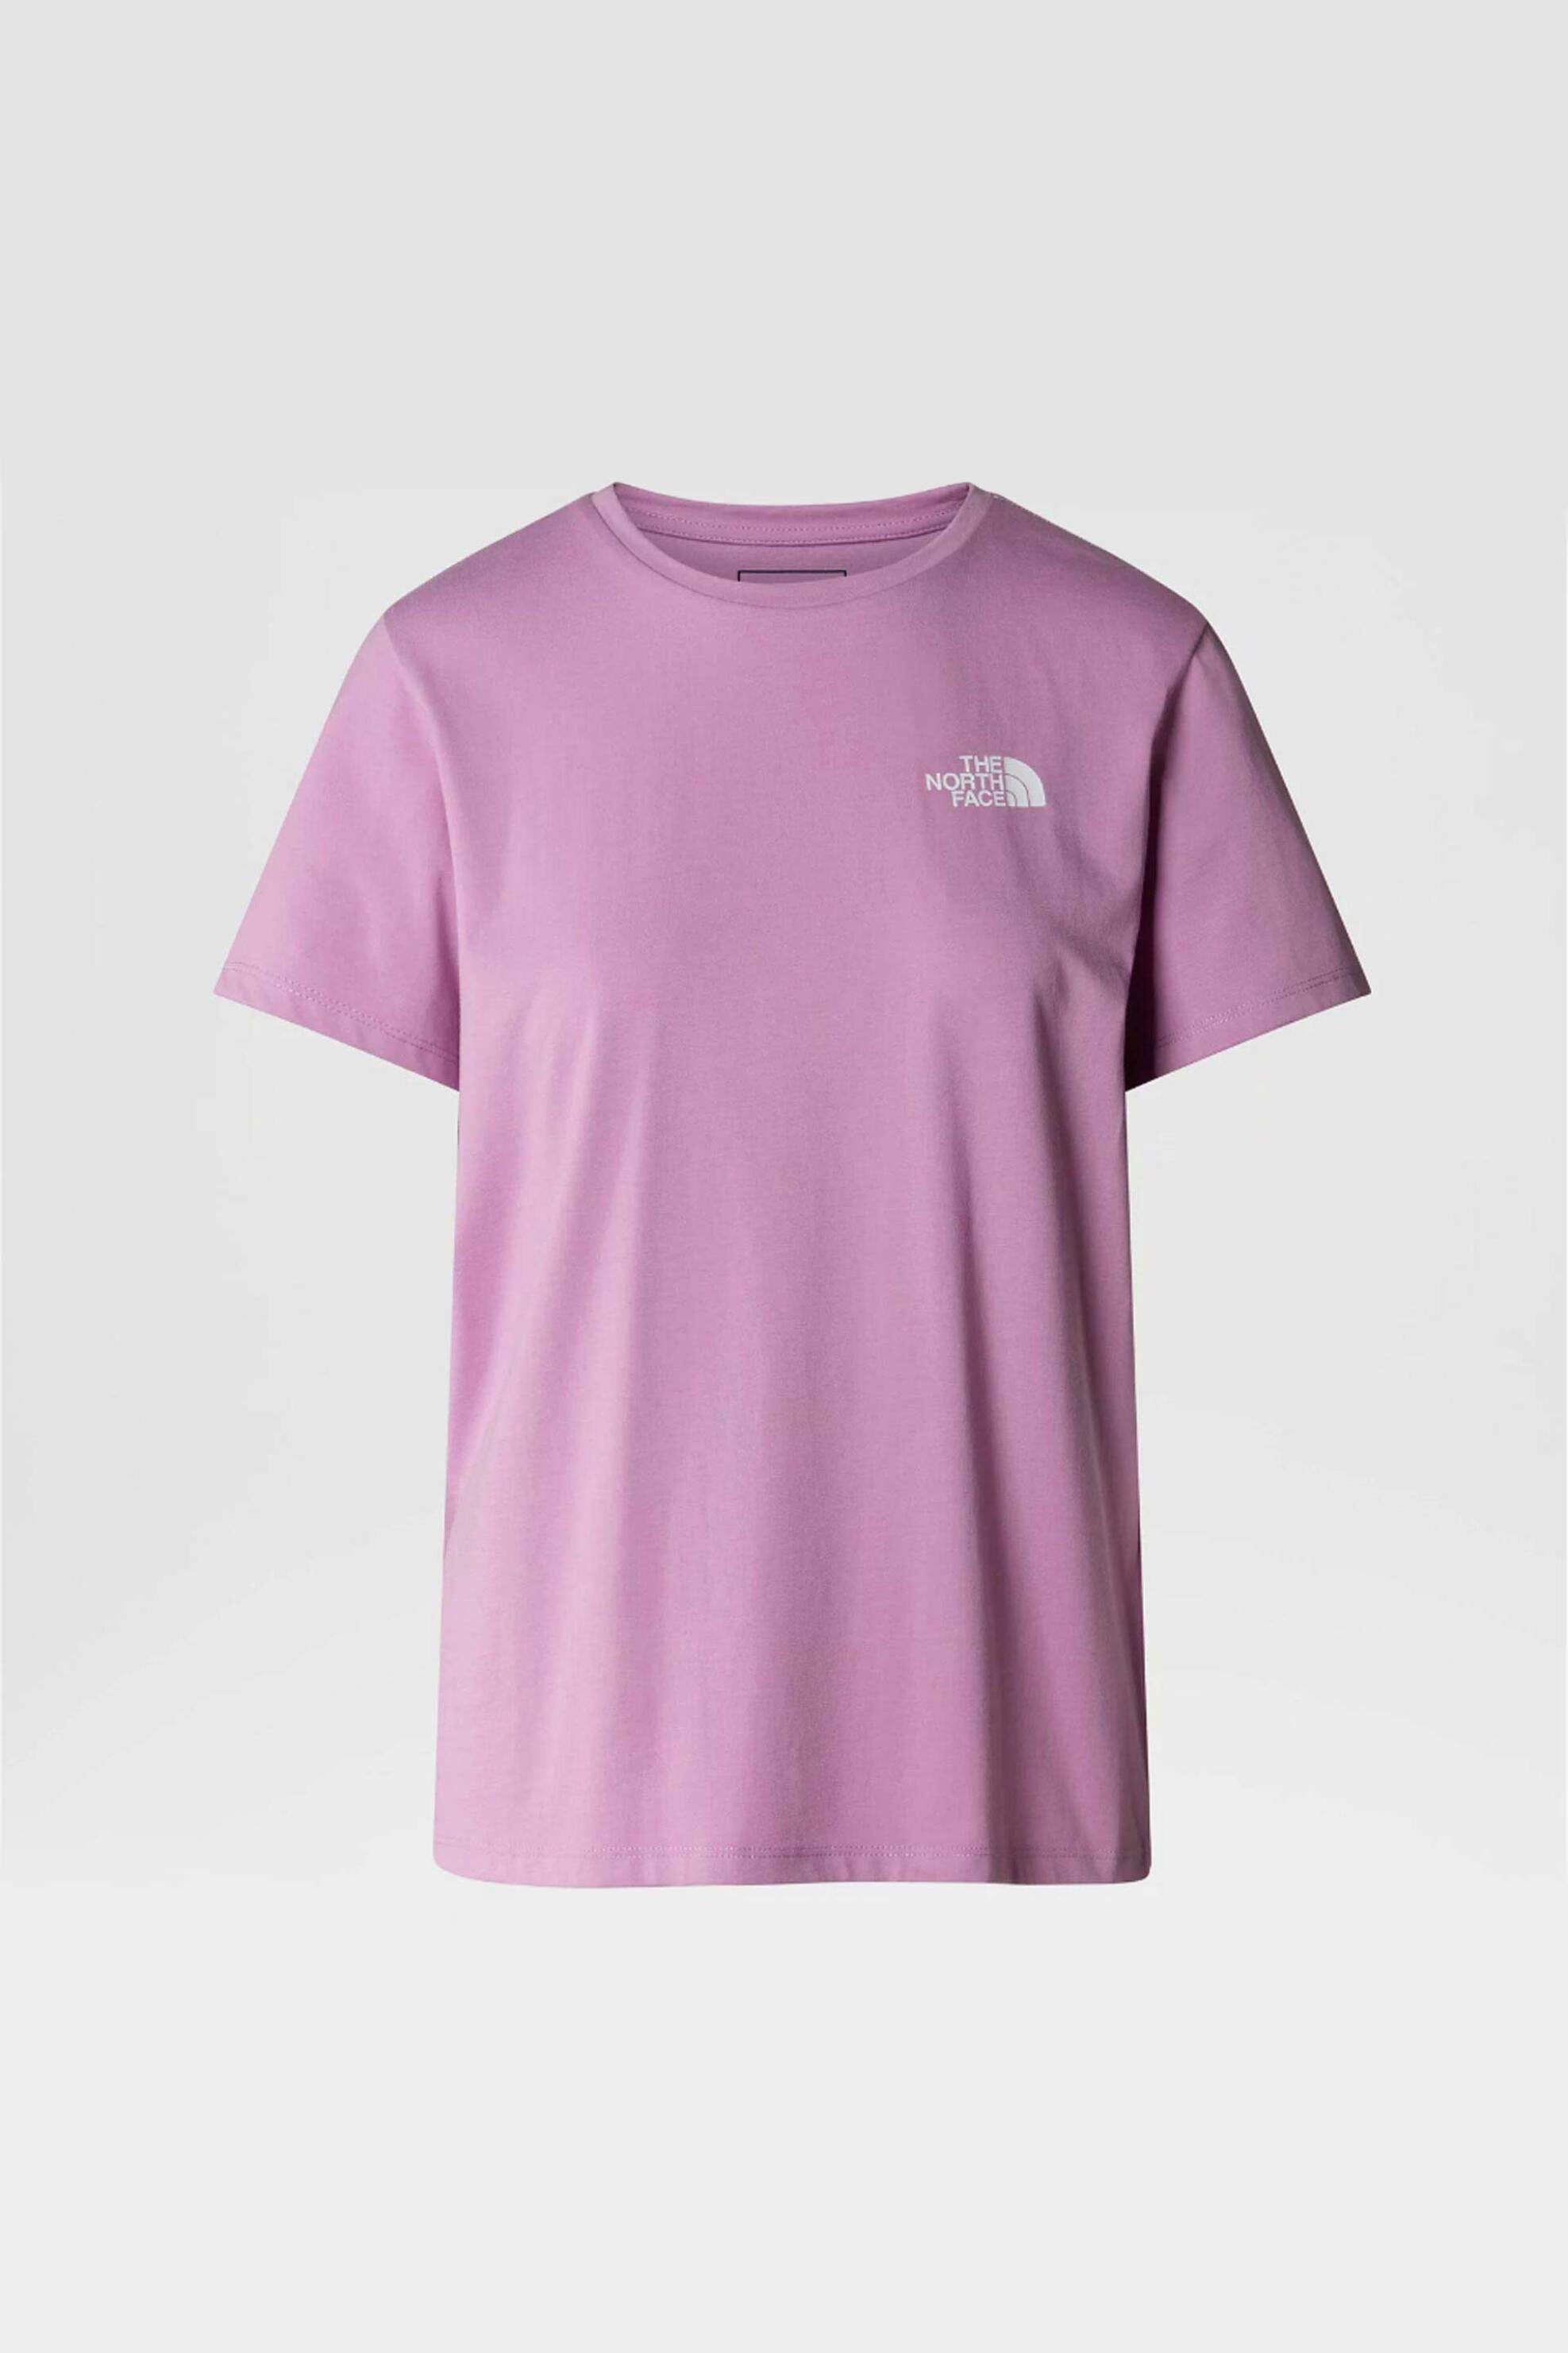 Γυναικεία Ρούχα & Αξεσουάρ > Γυναικεία Ρούχα > Γυναικεία Τοπ > Γυναικεία T-Shirts The North Face γυναικείο T-shirt μονόχρωμο με contrast prints "Foundation Mountain" - NF0A882VPO21 Ροζ